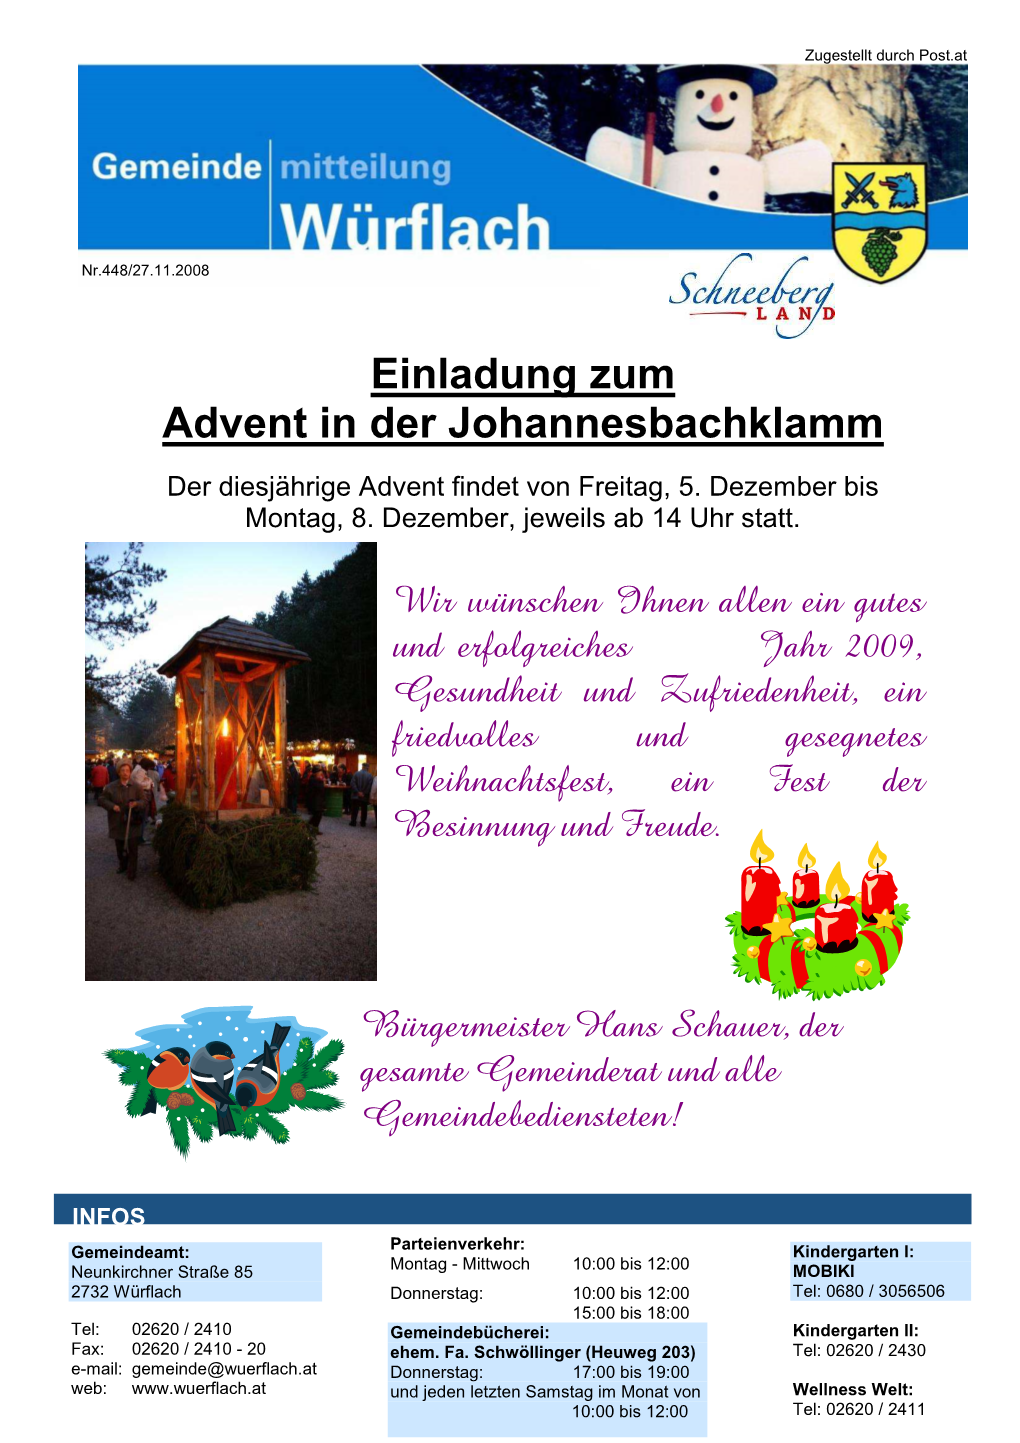 Einladung Zum Advent in Der Johannesbachklamm